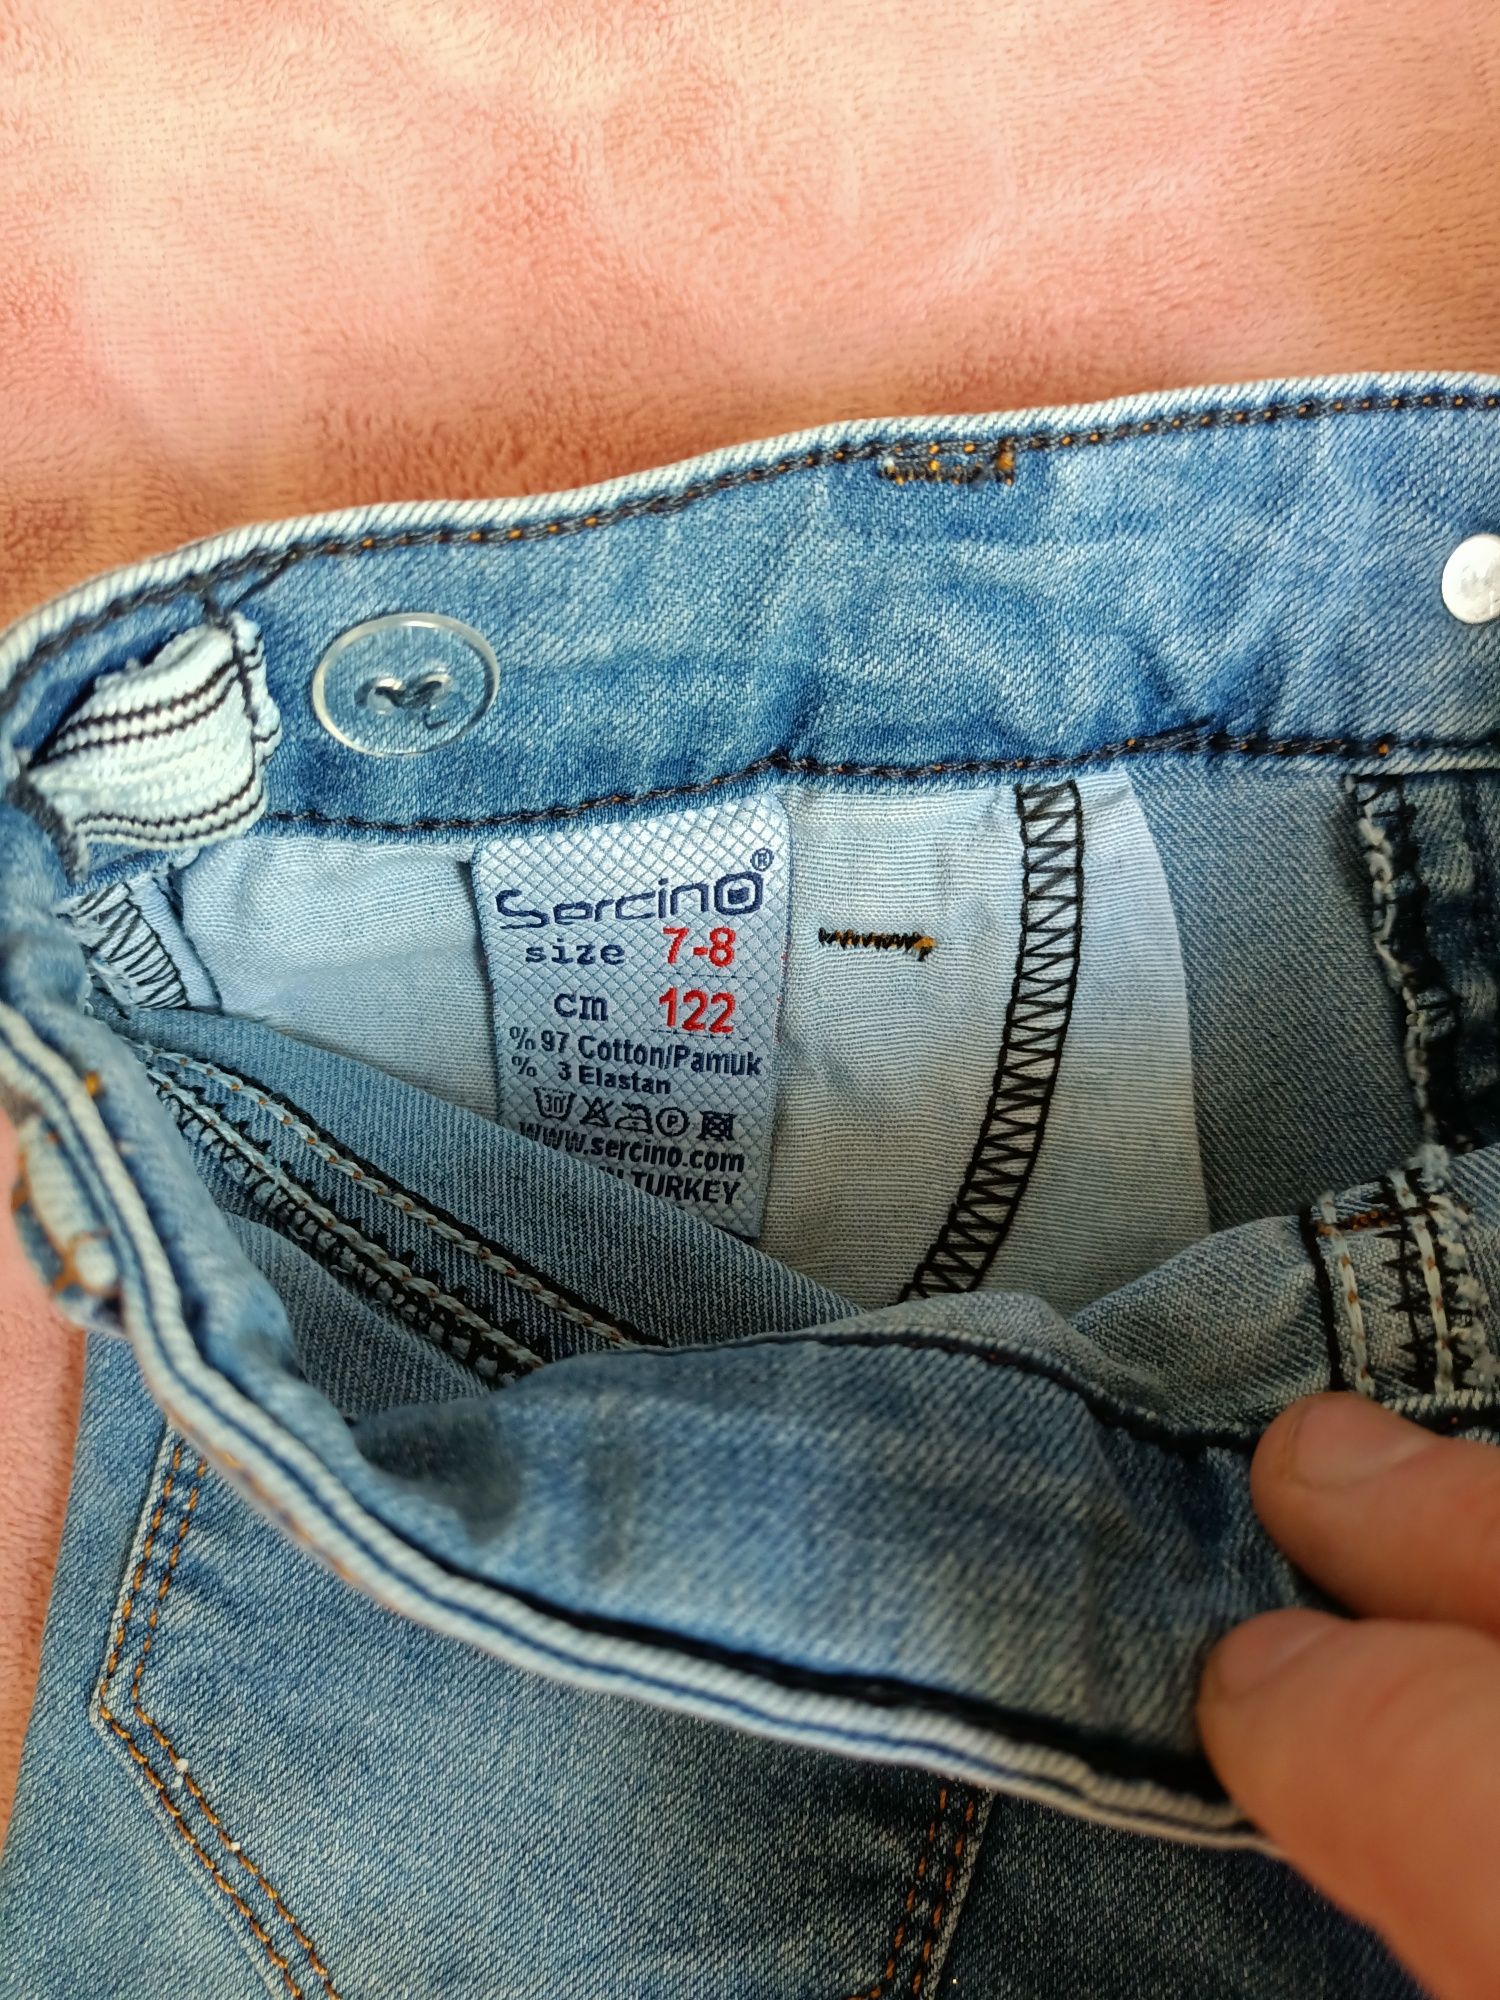 Шорты джинсовые для девочки размер 122 7-8